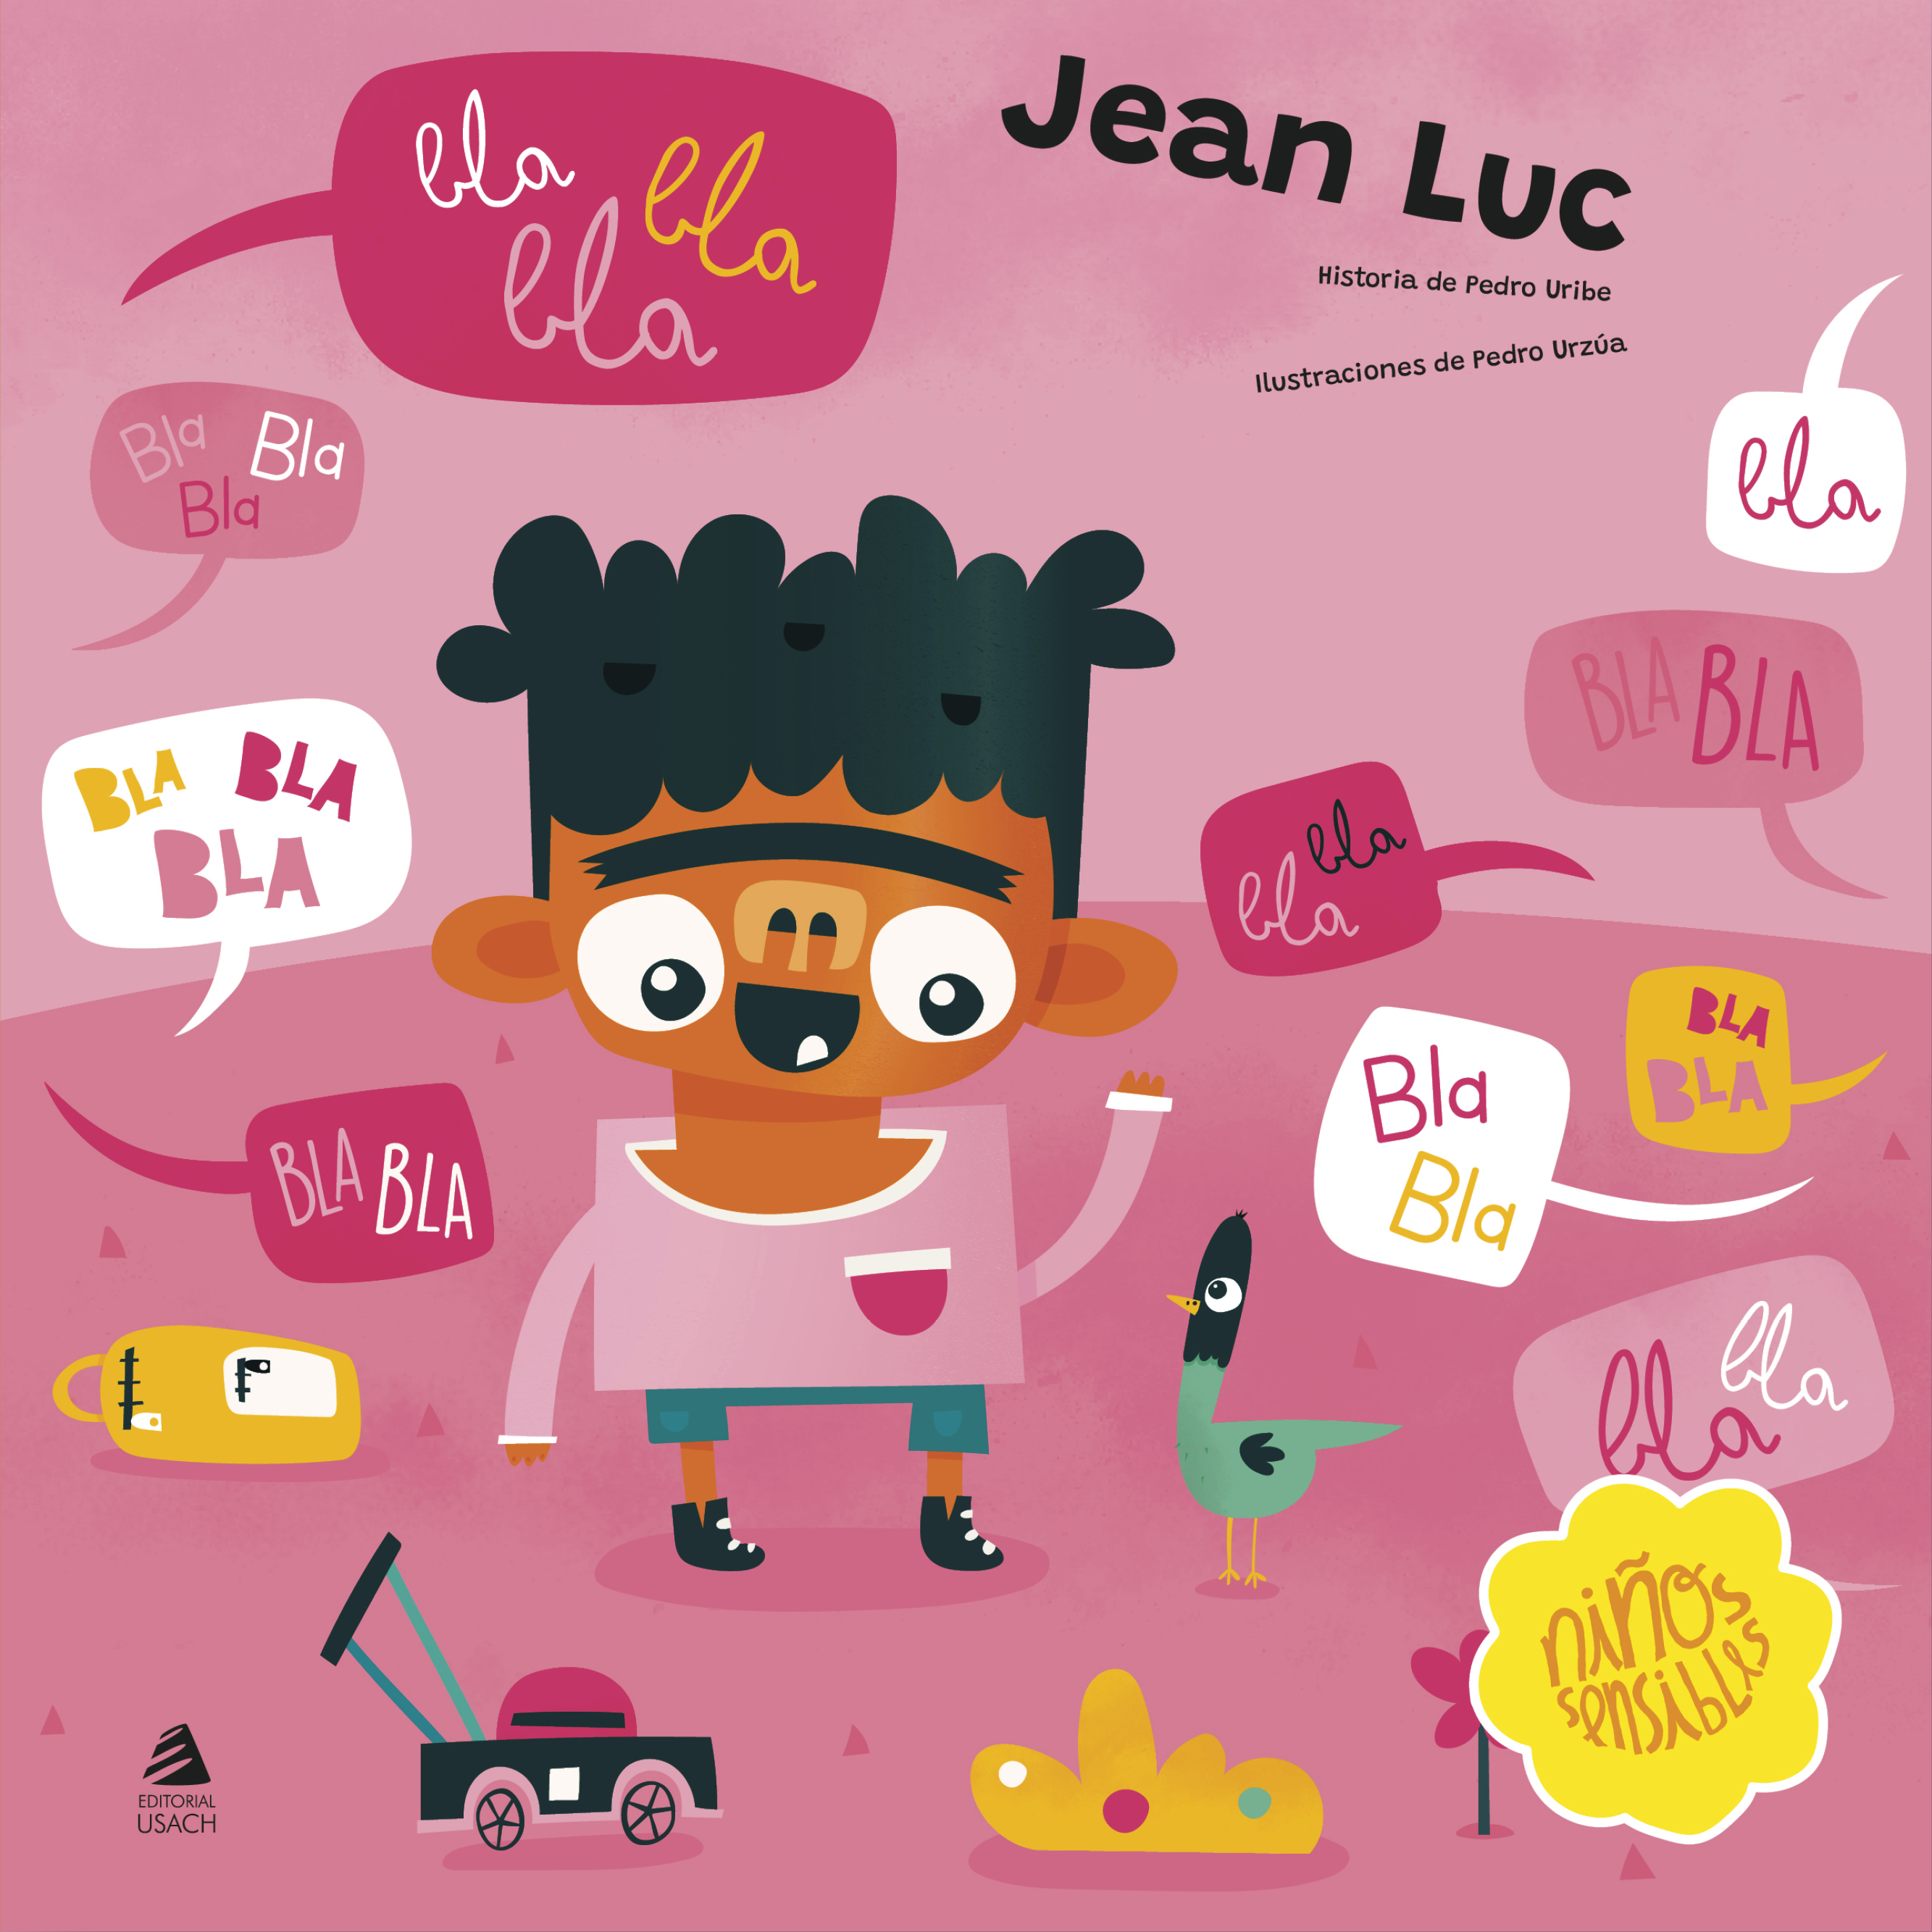 Jean Luc